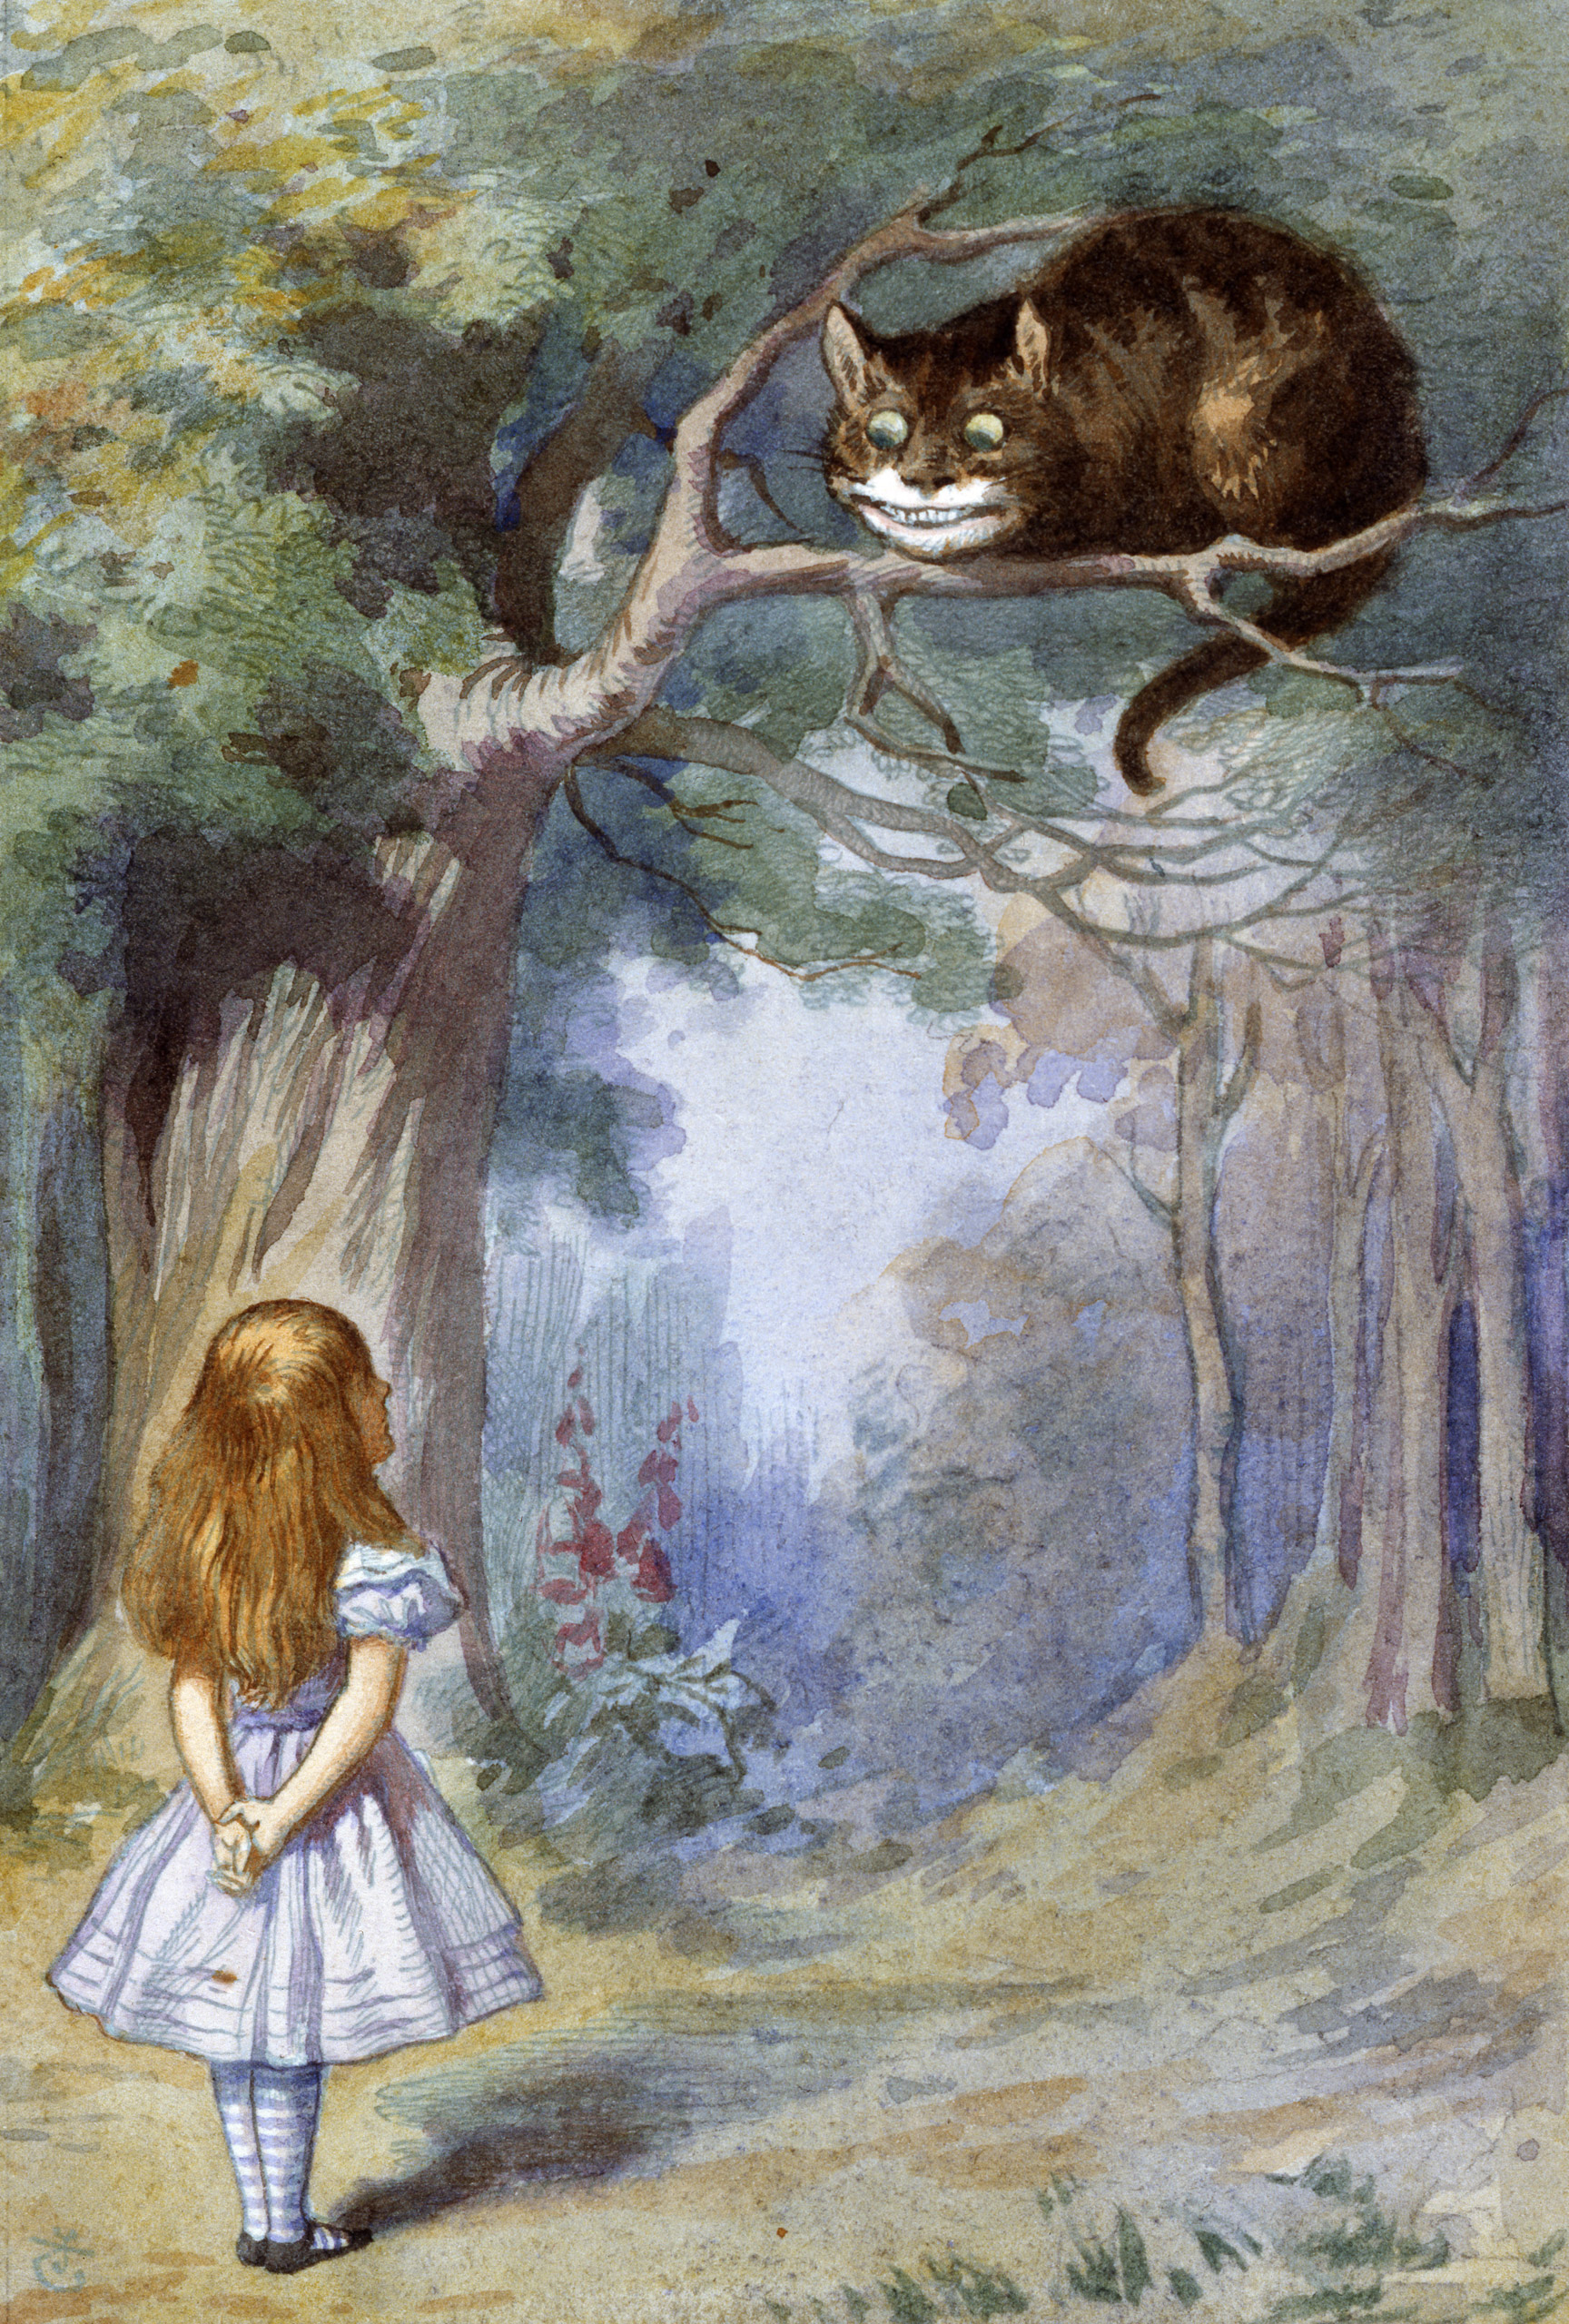 Алиса заметила. Чеширский кот Льюис Кэрролл. Чеширский кот Алиса в стране чудес. Алиса и Чеширский кот Льюис Кэролл. Джон Тенниел Чеширский кот.